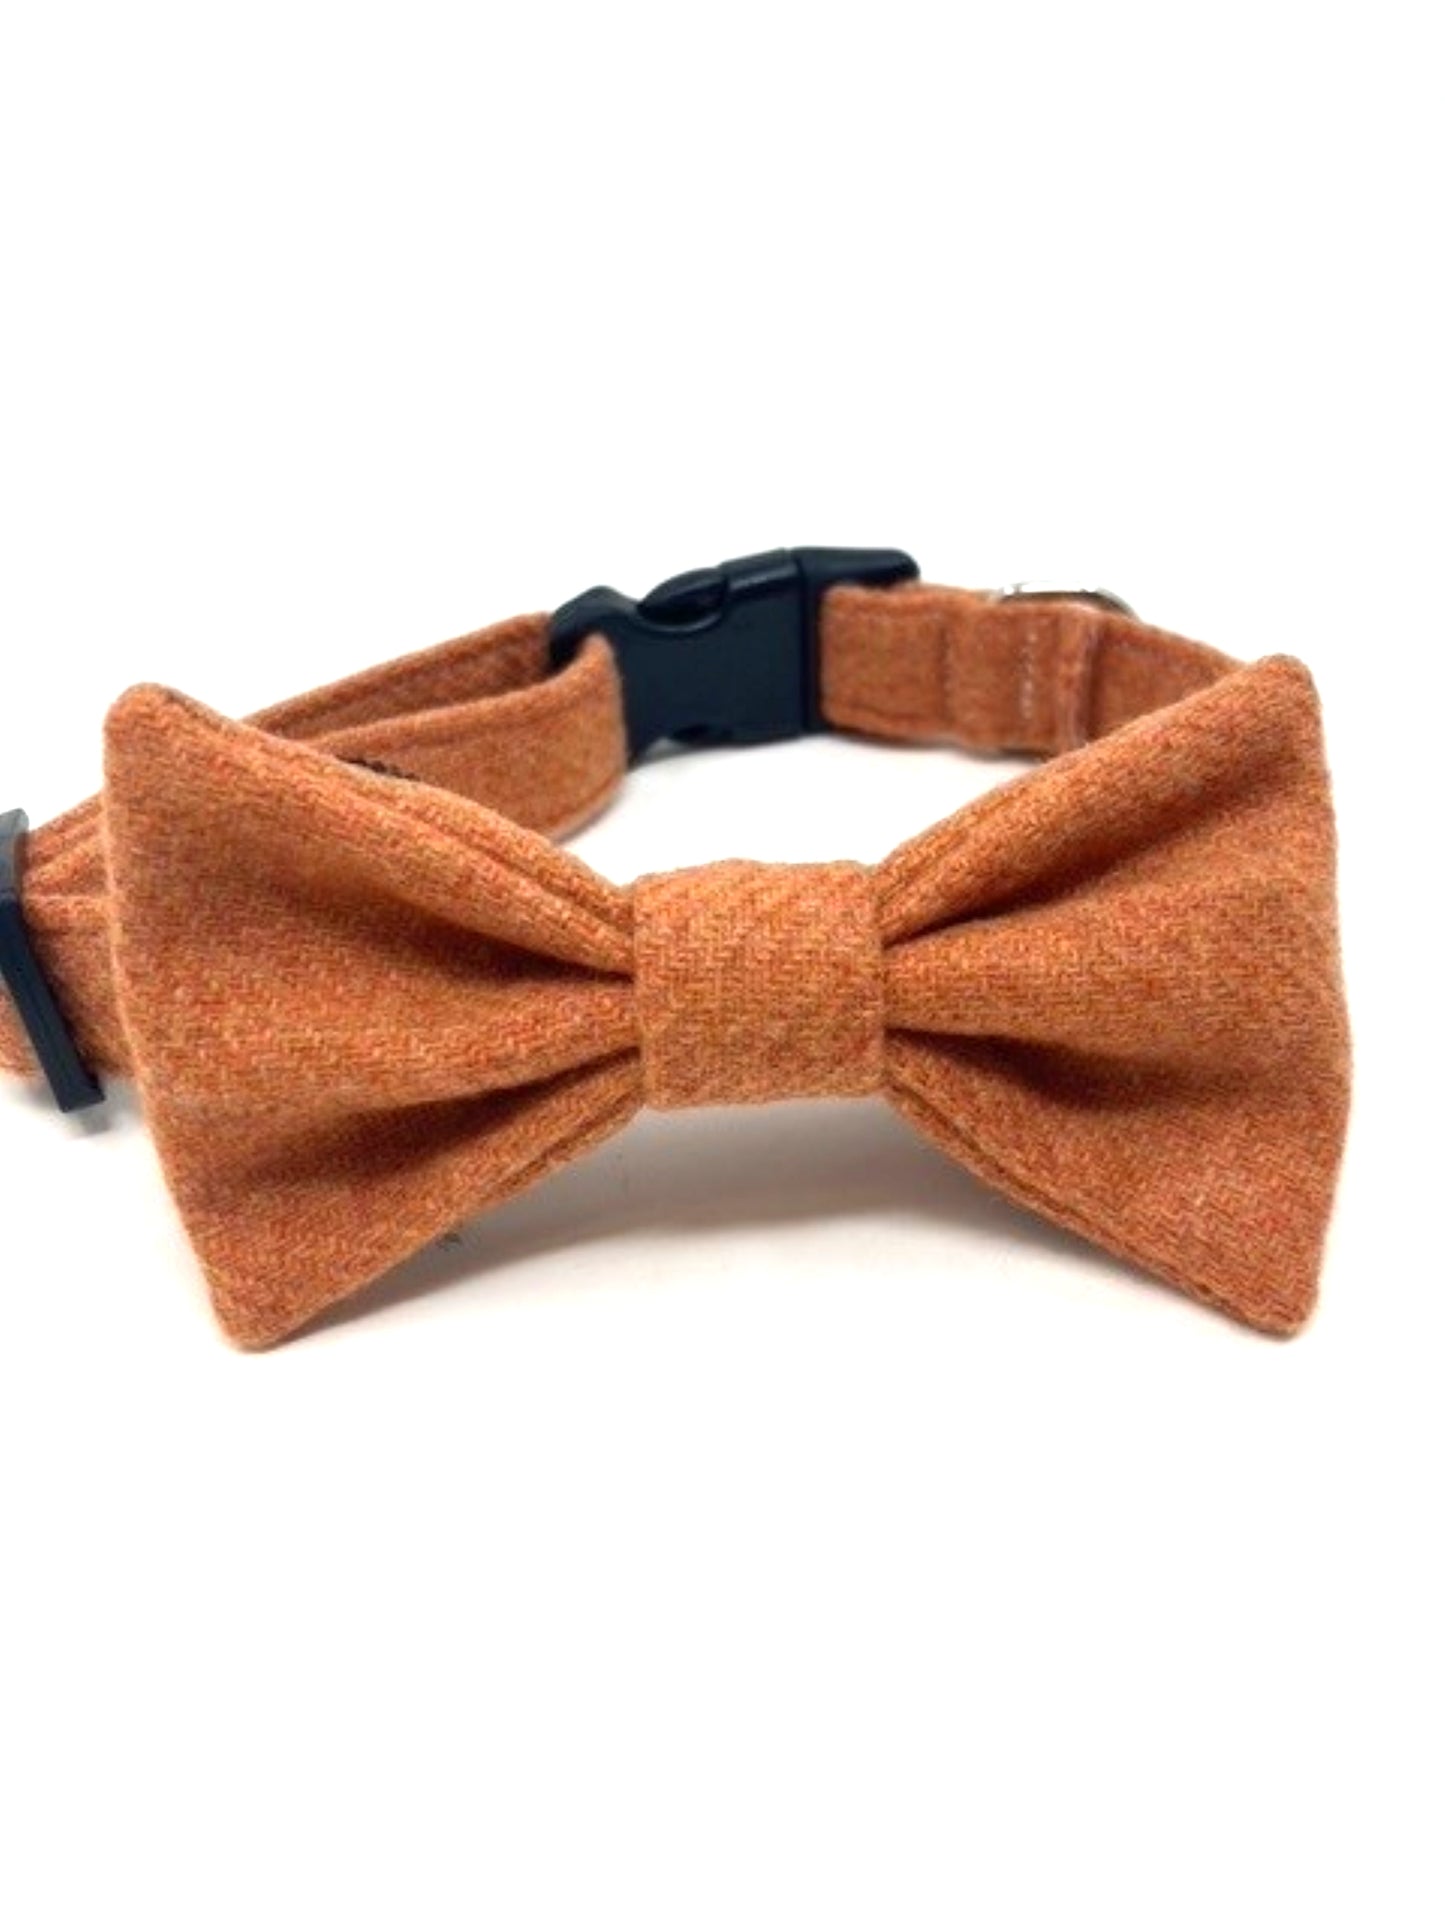 Tweed Dog Collar - Plain Orange